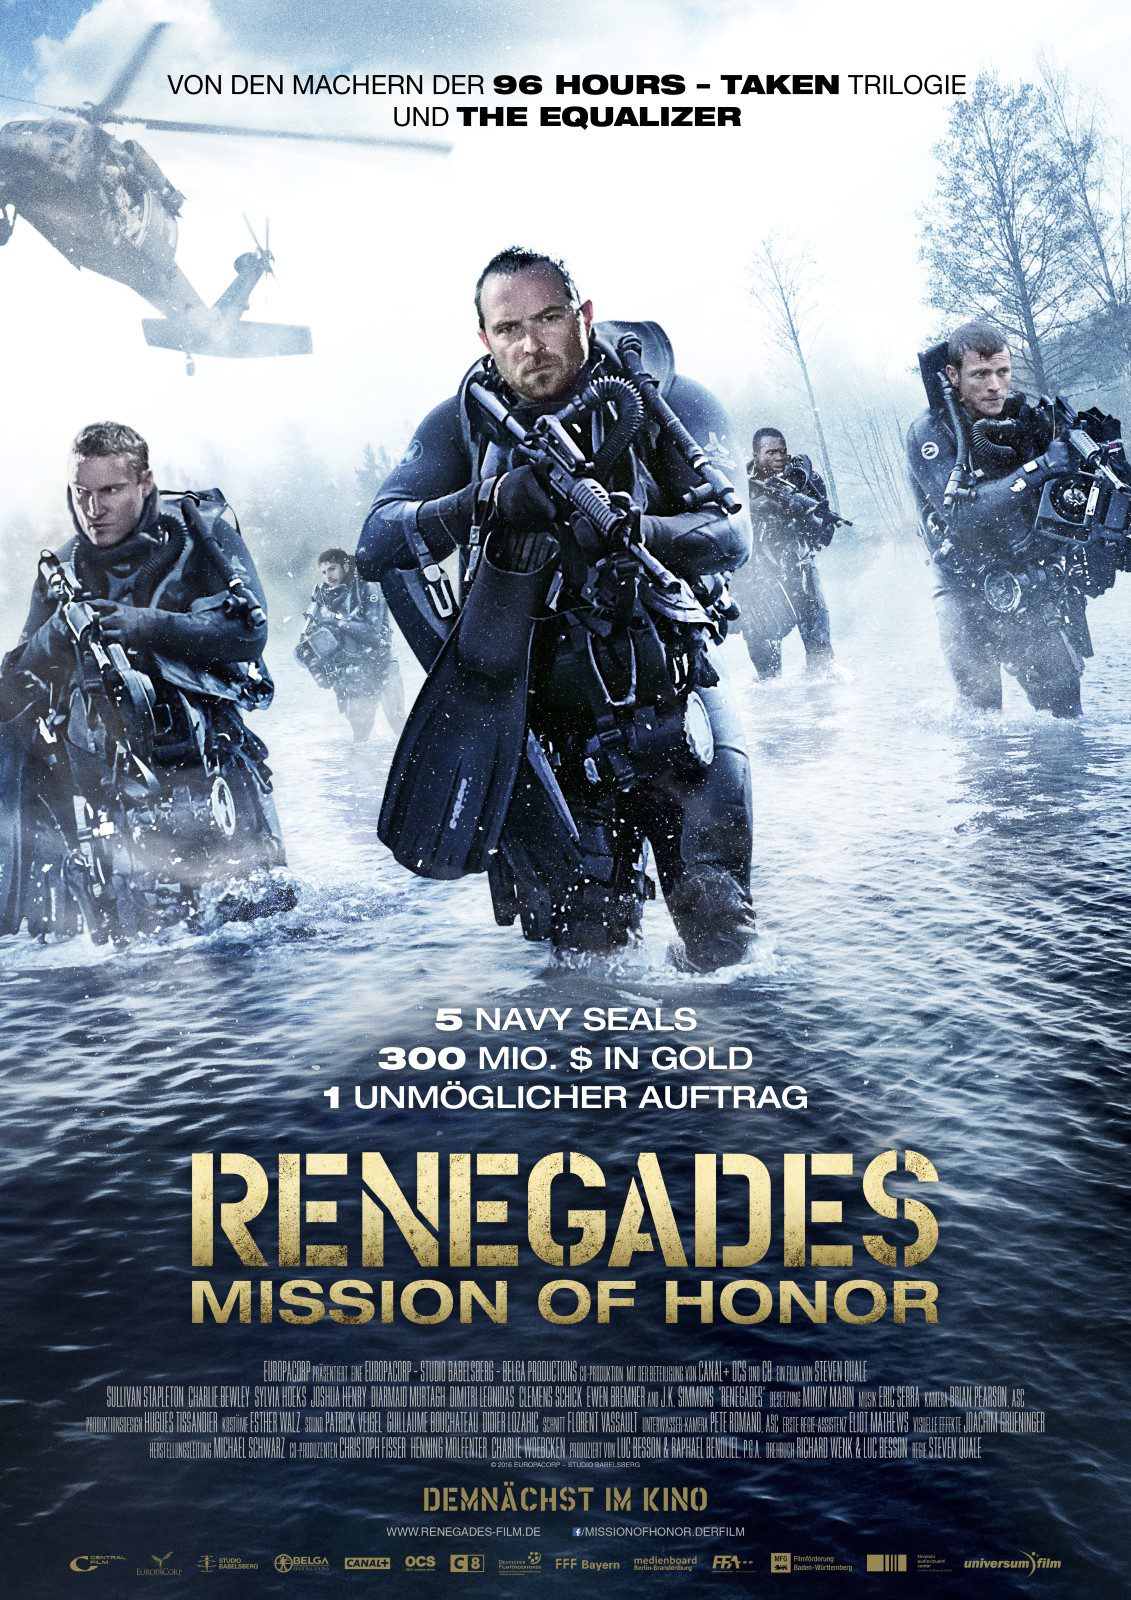 ดูหนังออนไลน์ฟรี Renegades เรเนเกดส์ ทีมยุทธการล่าโคตรทองใต้สมุทร